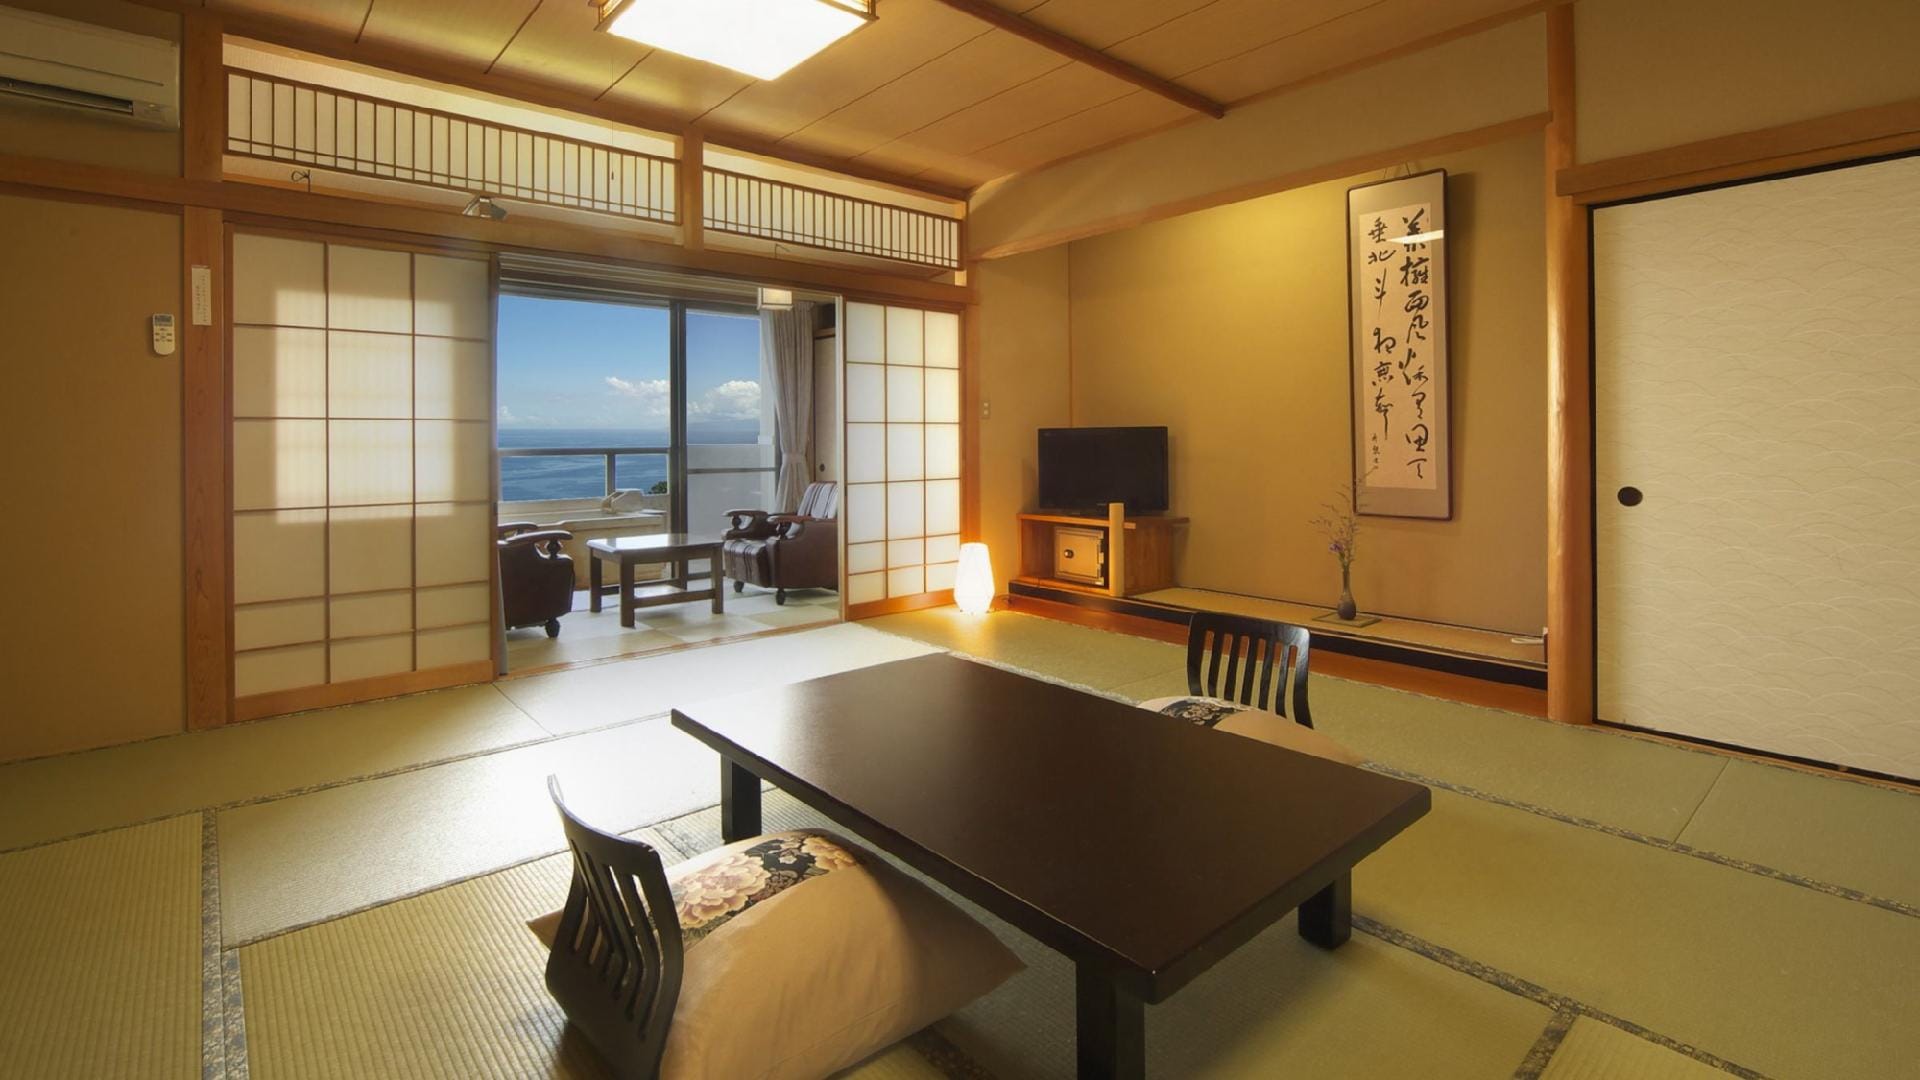 [ห้องพักผ่อนสไตล์ญี่ปุ่น] Akatsuki 2nd floor 15 tatami Japanese-style room + private room with open-air bath